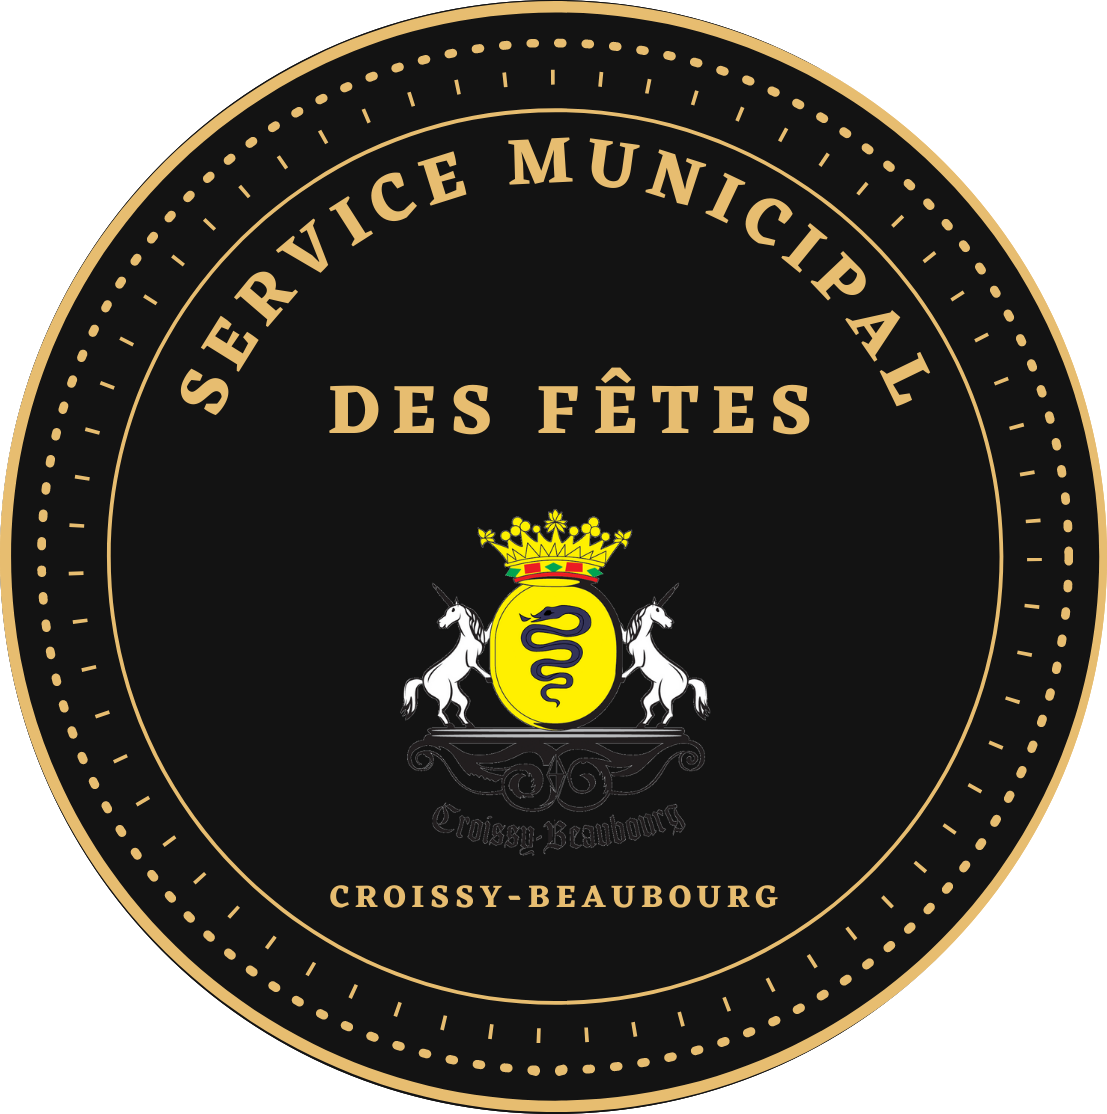 Spectacles commune de Croissy-Beaubourg